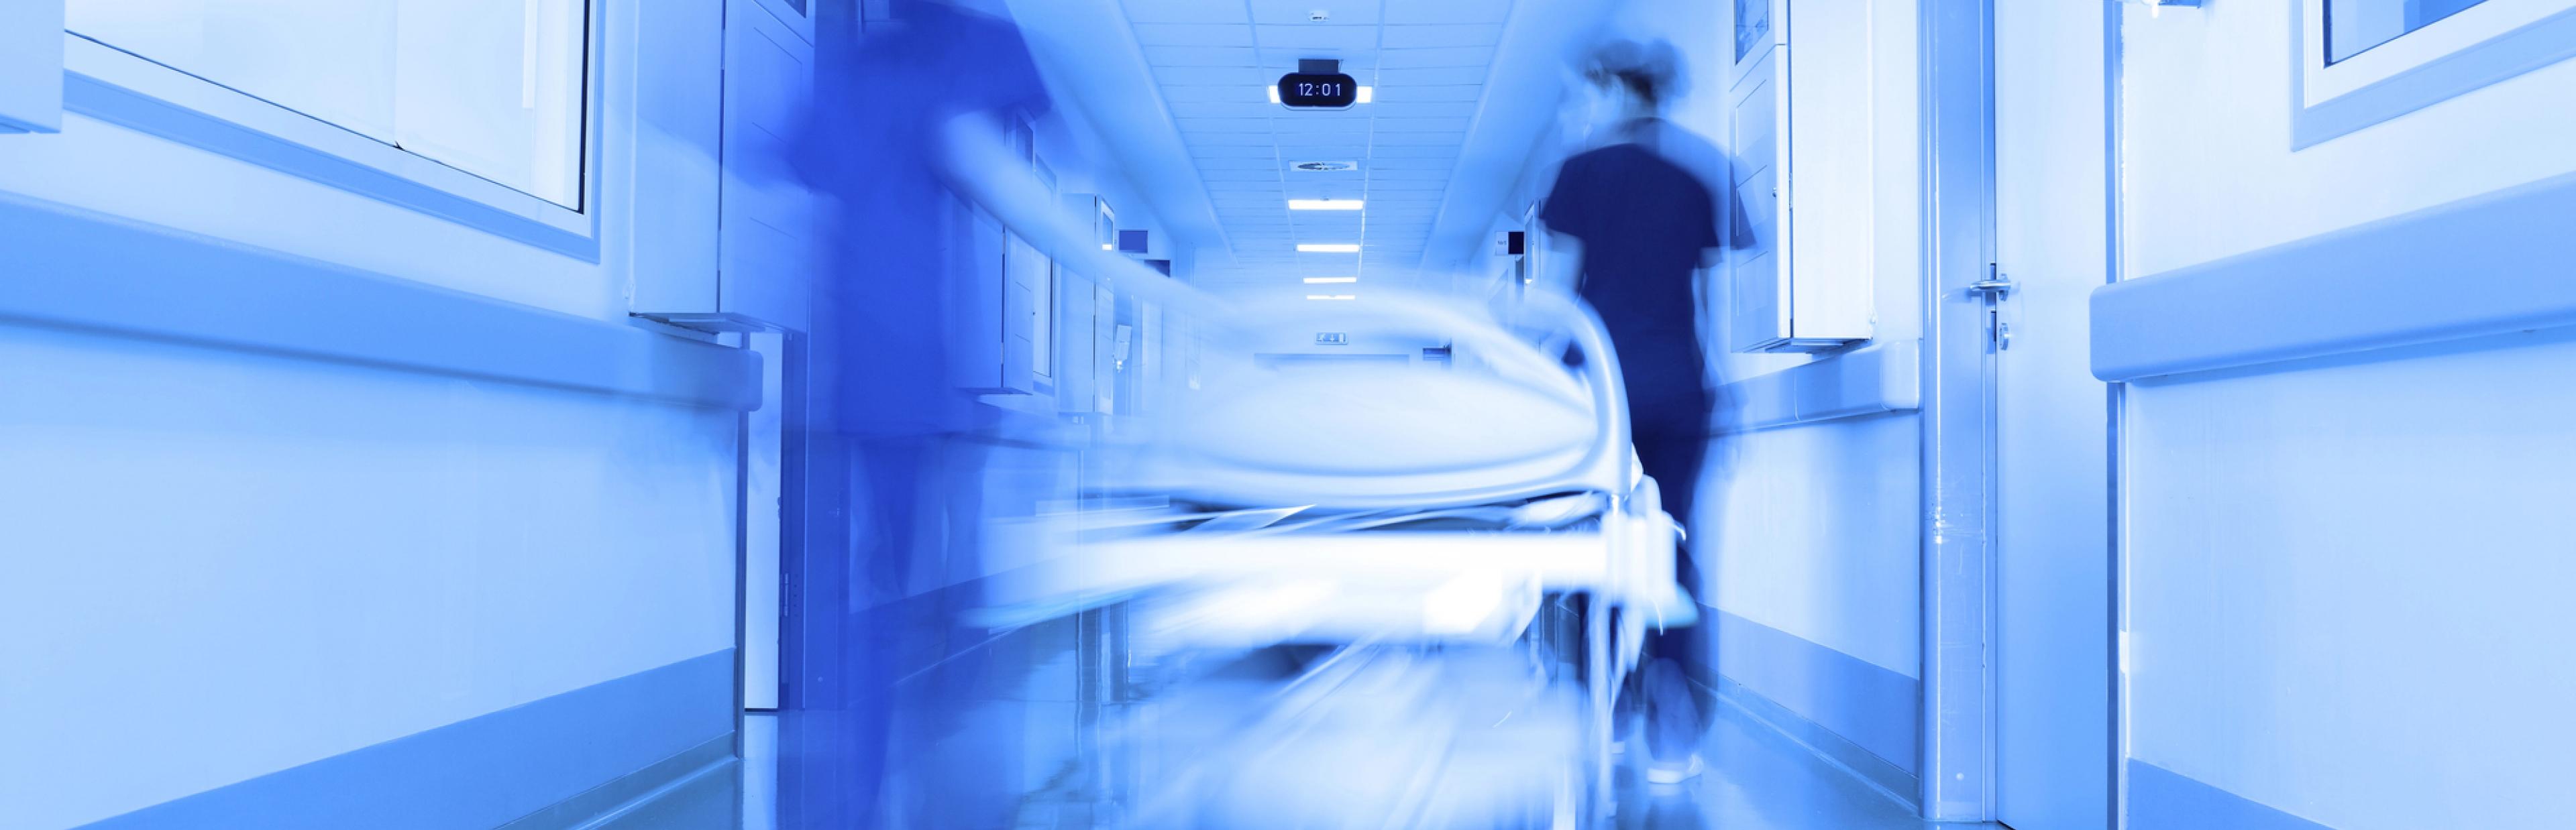 Zwei Pfleger:innen schieben ein Bett über einen Krankenhausflur. Foto zeigt die Szene verschwommen und mit blauem Filter